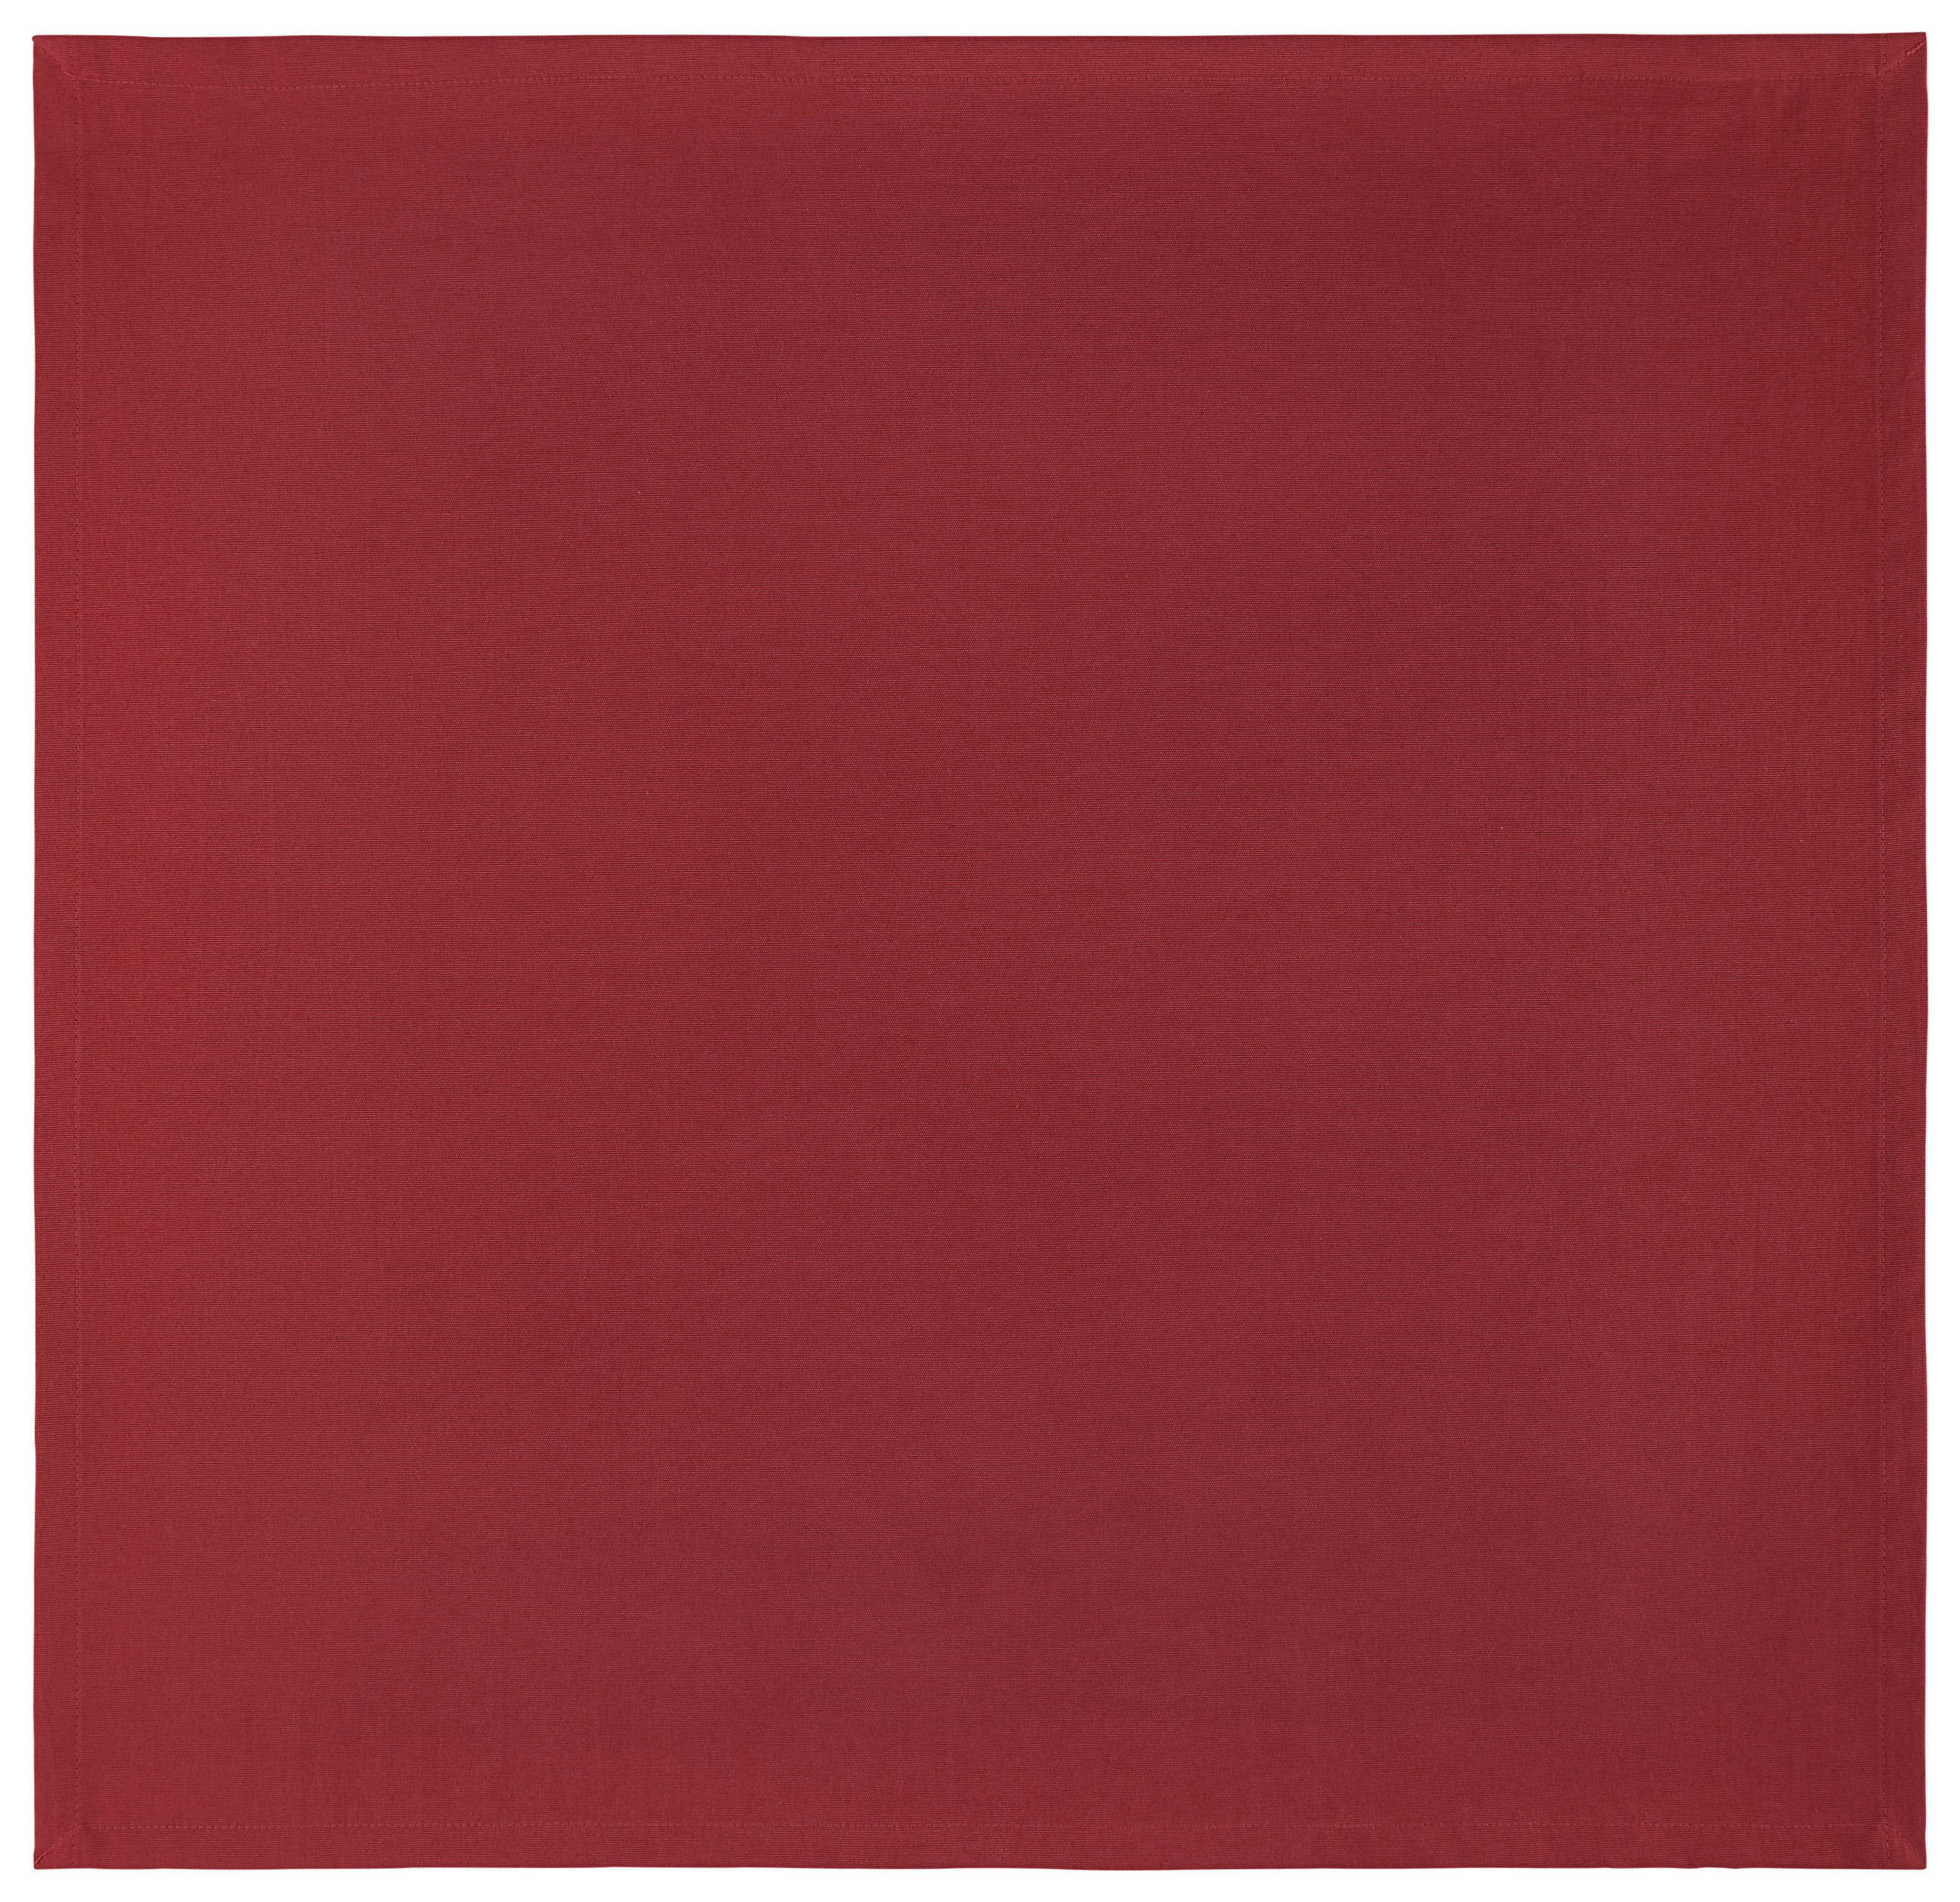 Terítő Steffi 80/80cm - Piros, Textil (80/80cm) - Mary's